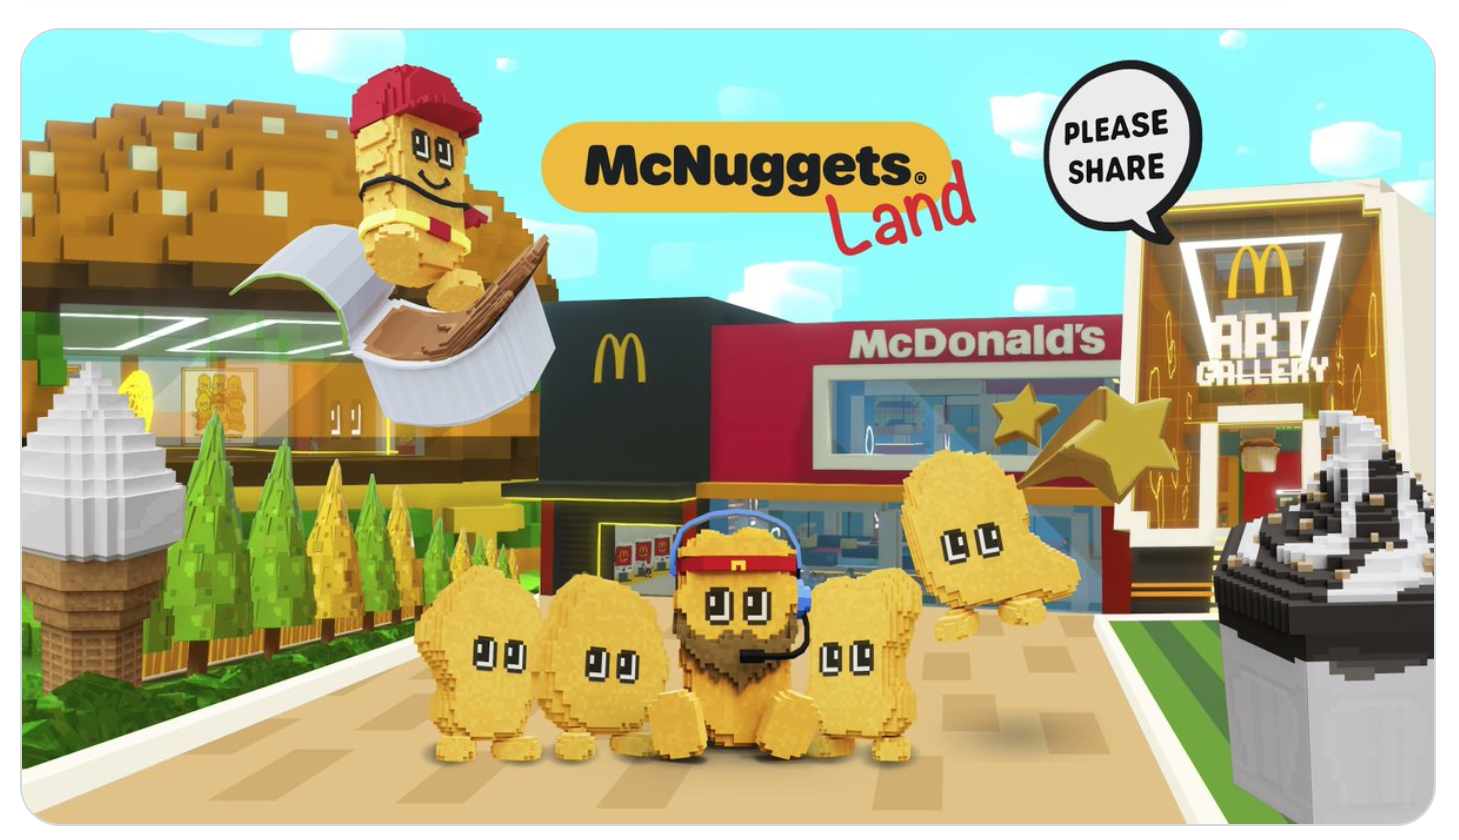 McDonald's Hong Kong entra en el metaverso para celebrar los McNuggets